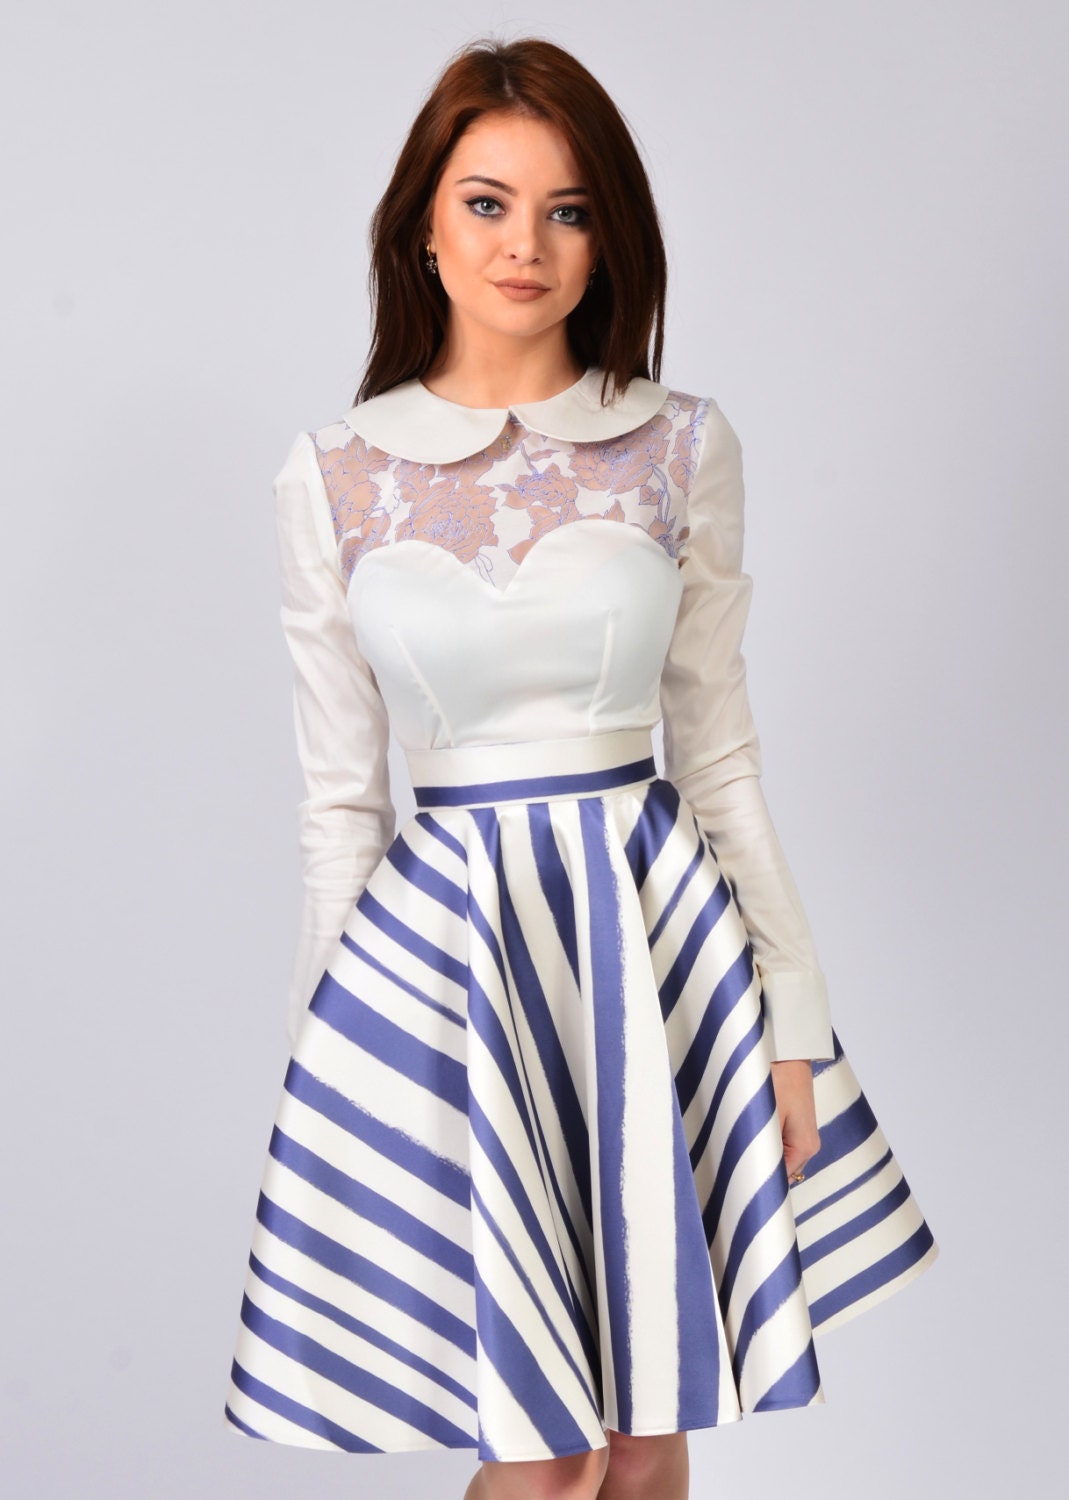 Pleated Skirt Knee Length Full Midi for Women Elegant Wear | Etsy